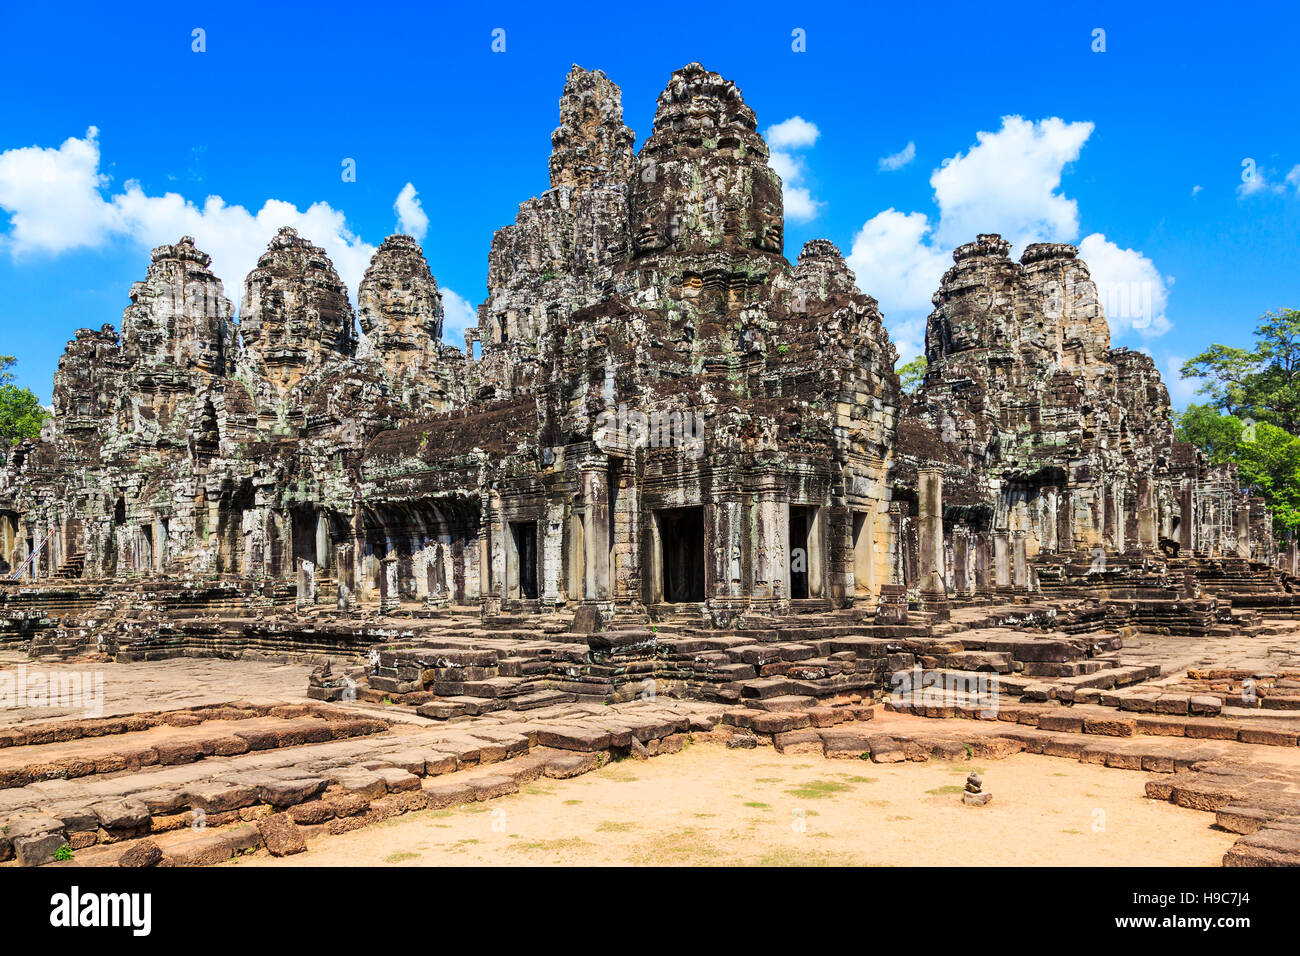 Bayon Temple at Angkor Thom. Siem Reap, Cambodia. Stock Photo